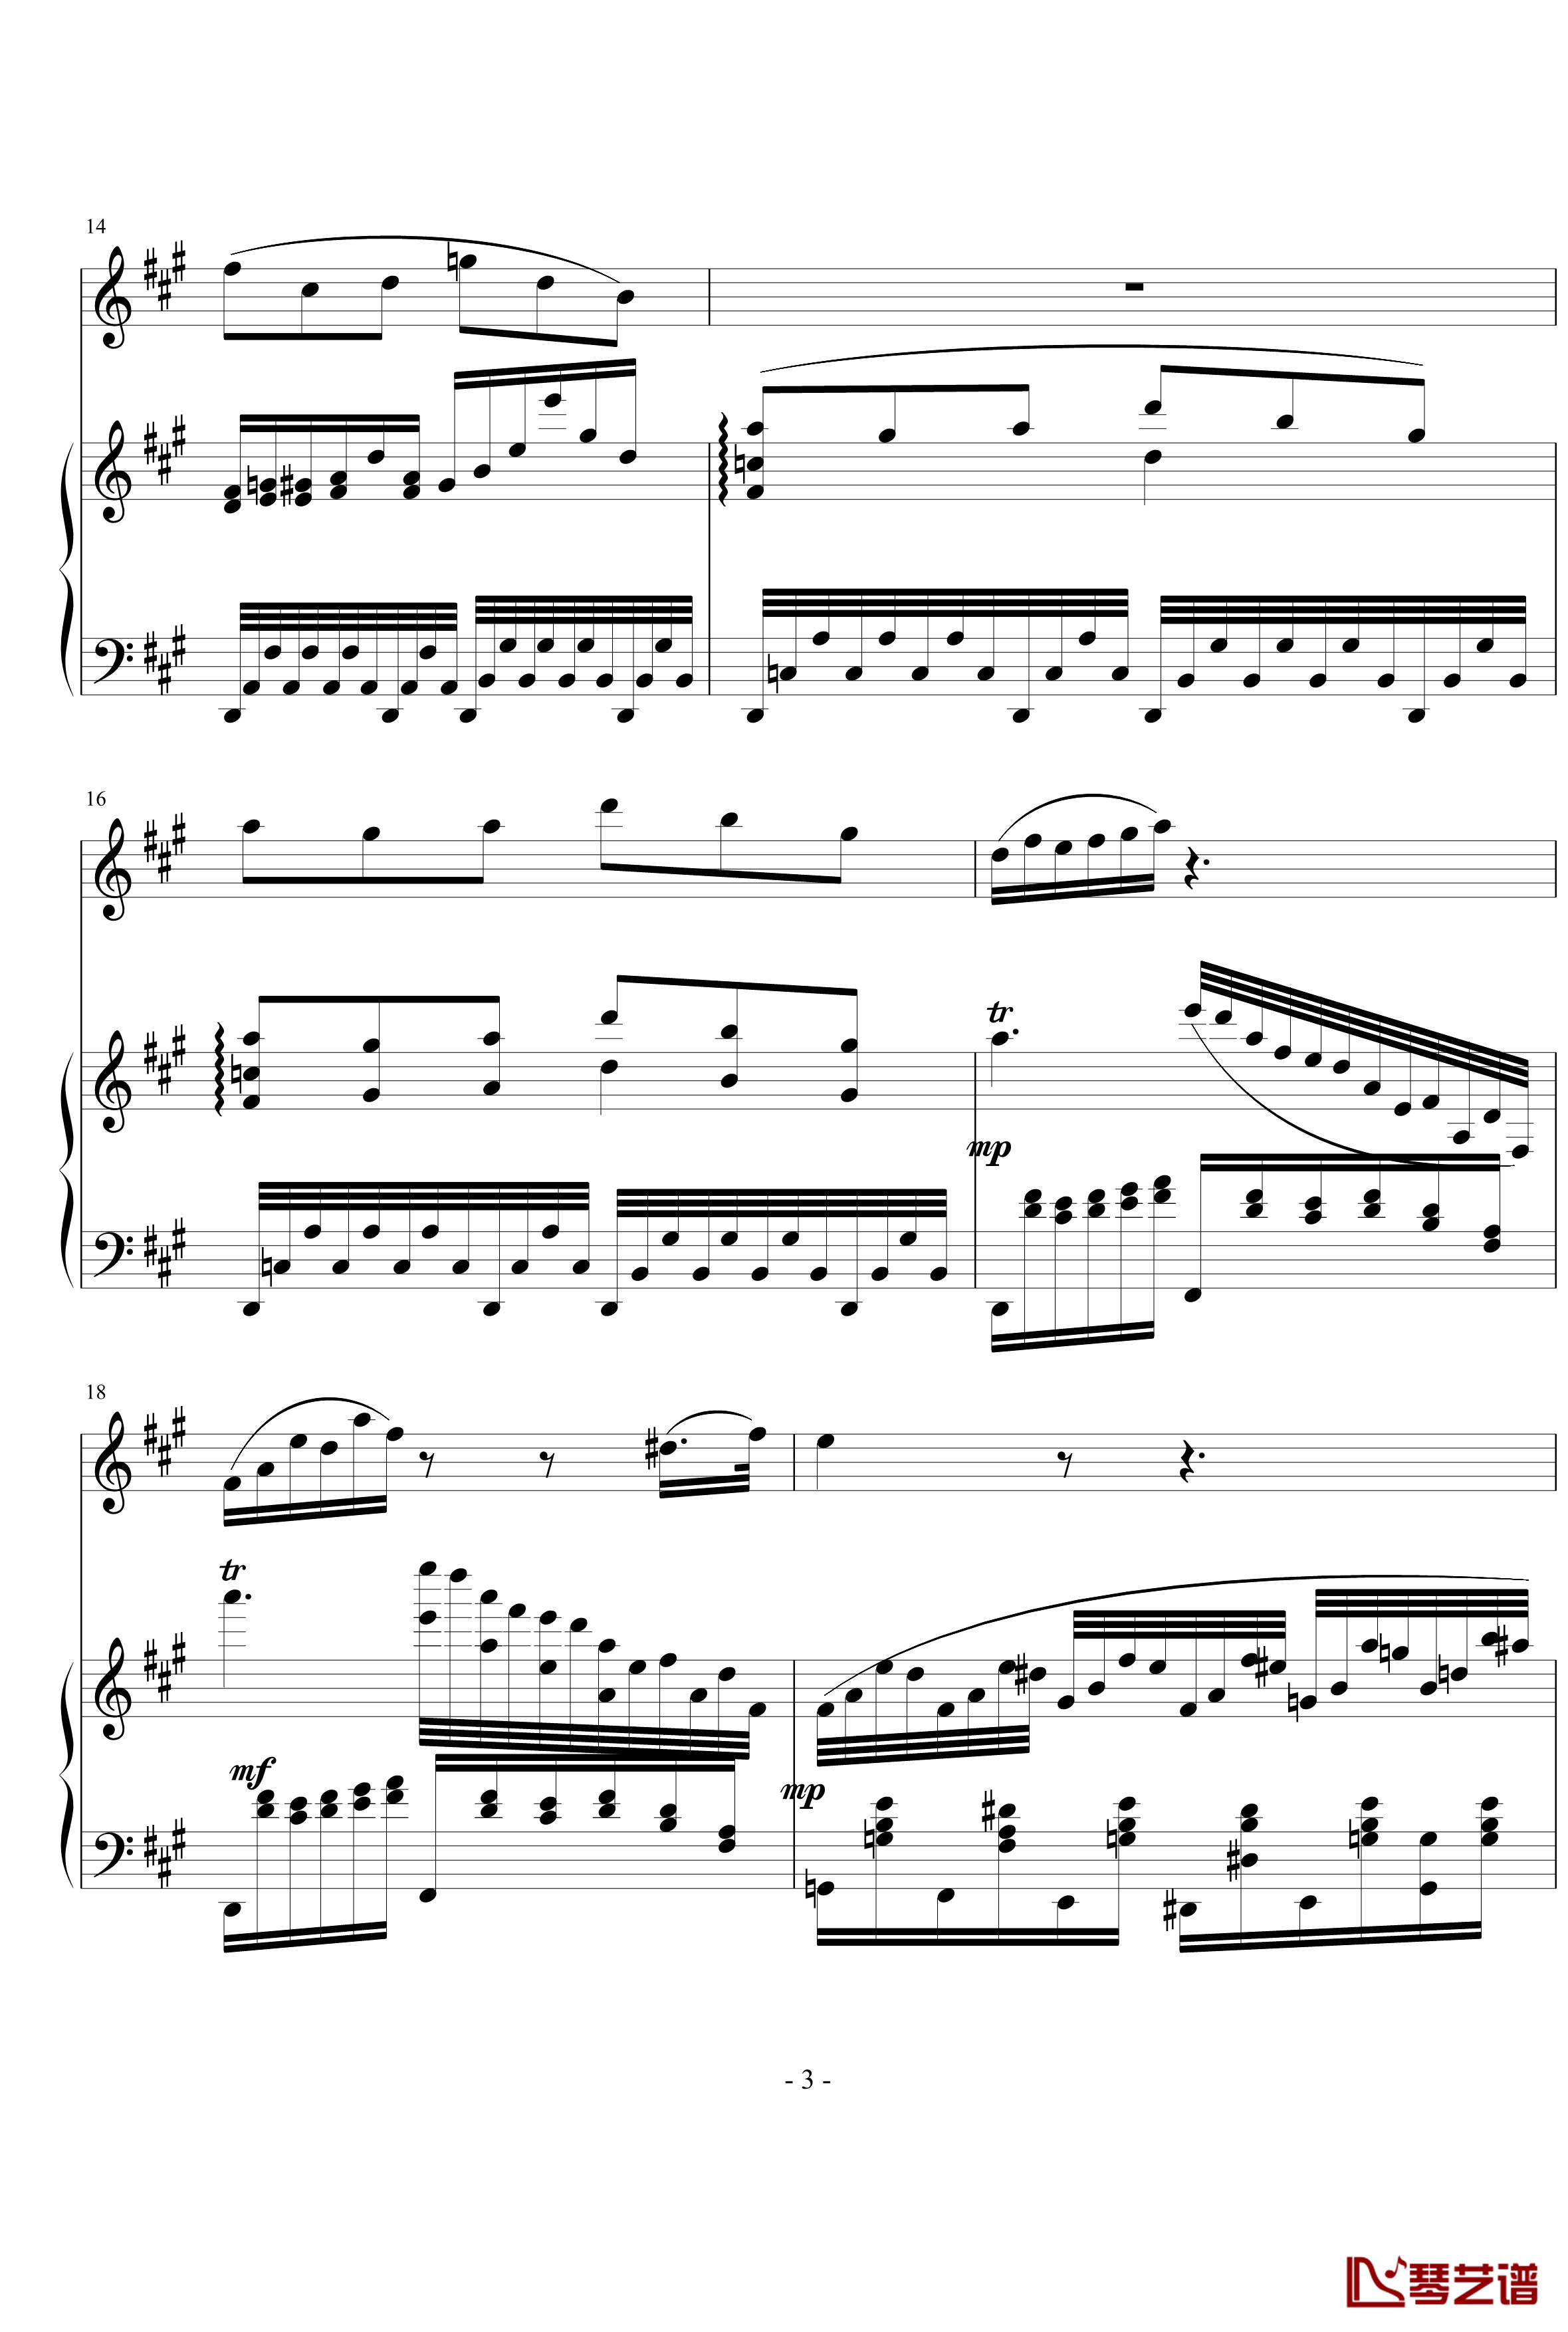 钢琴单簧管小奏鸣曲钢琴谱-nyride3